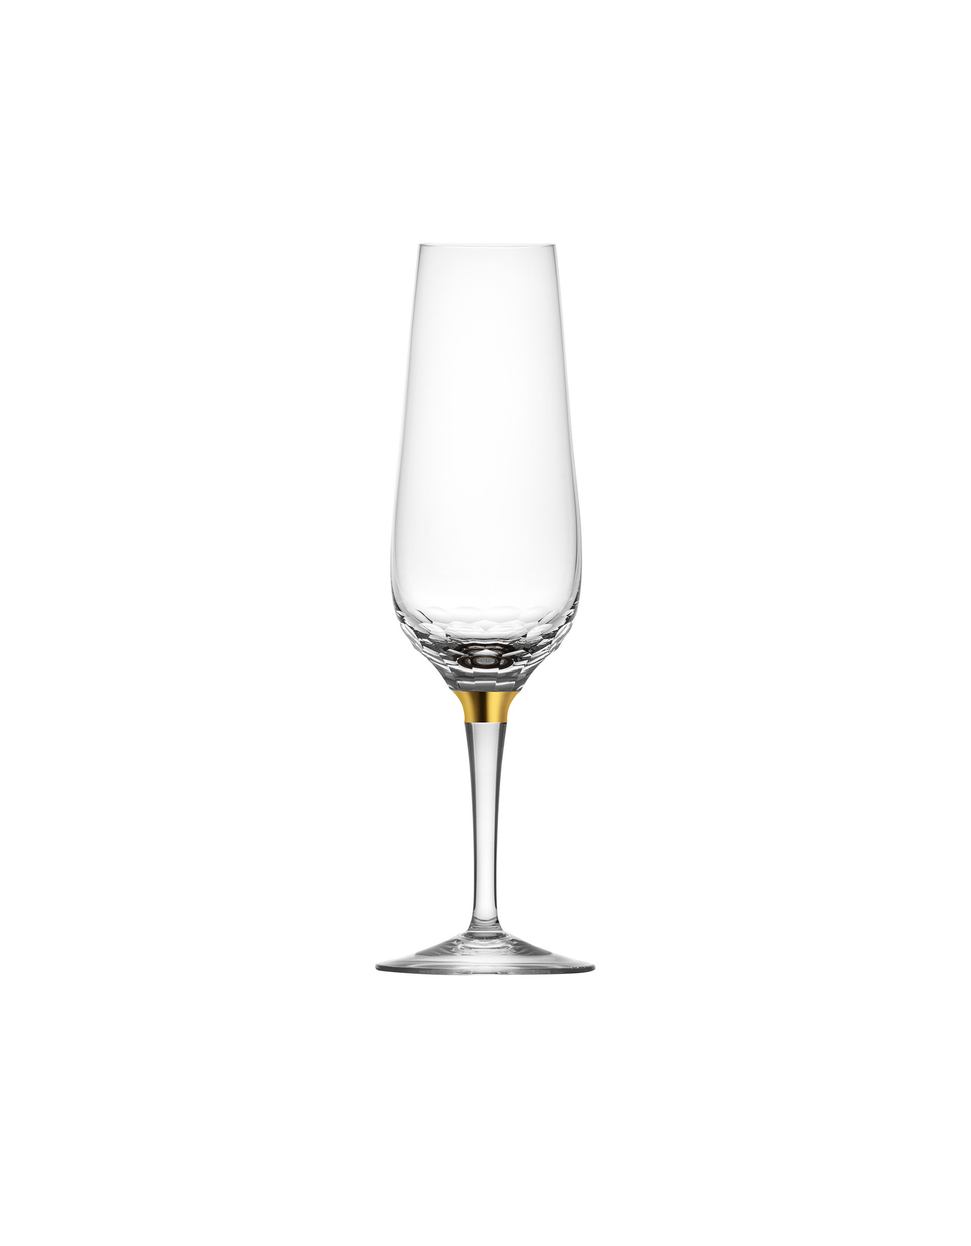 Šperk sklenka na šampaňské, 330 ml